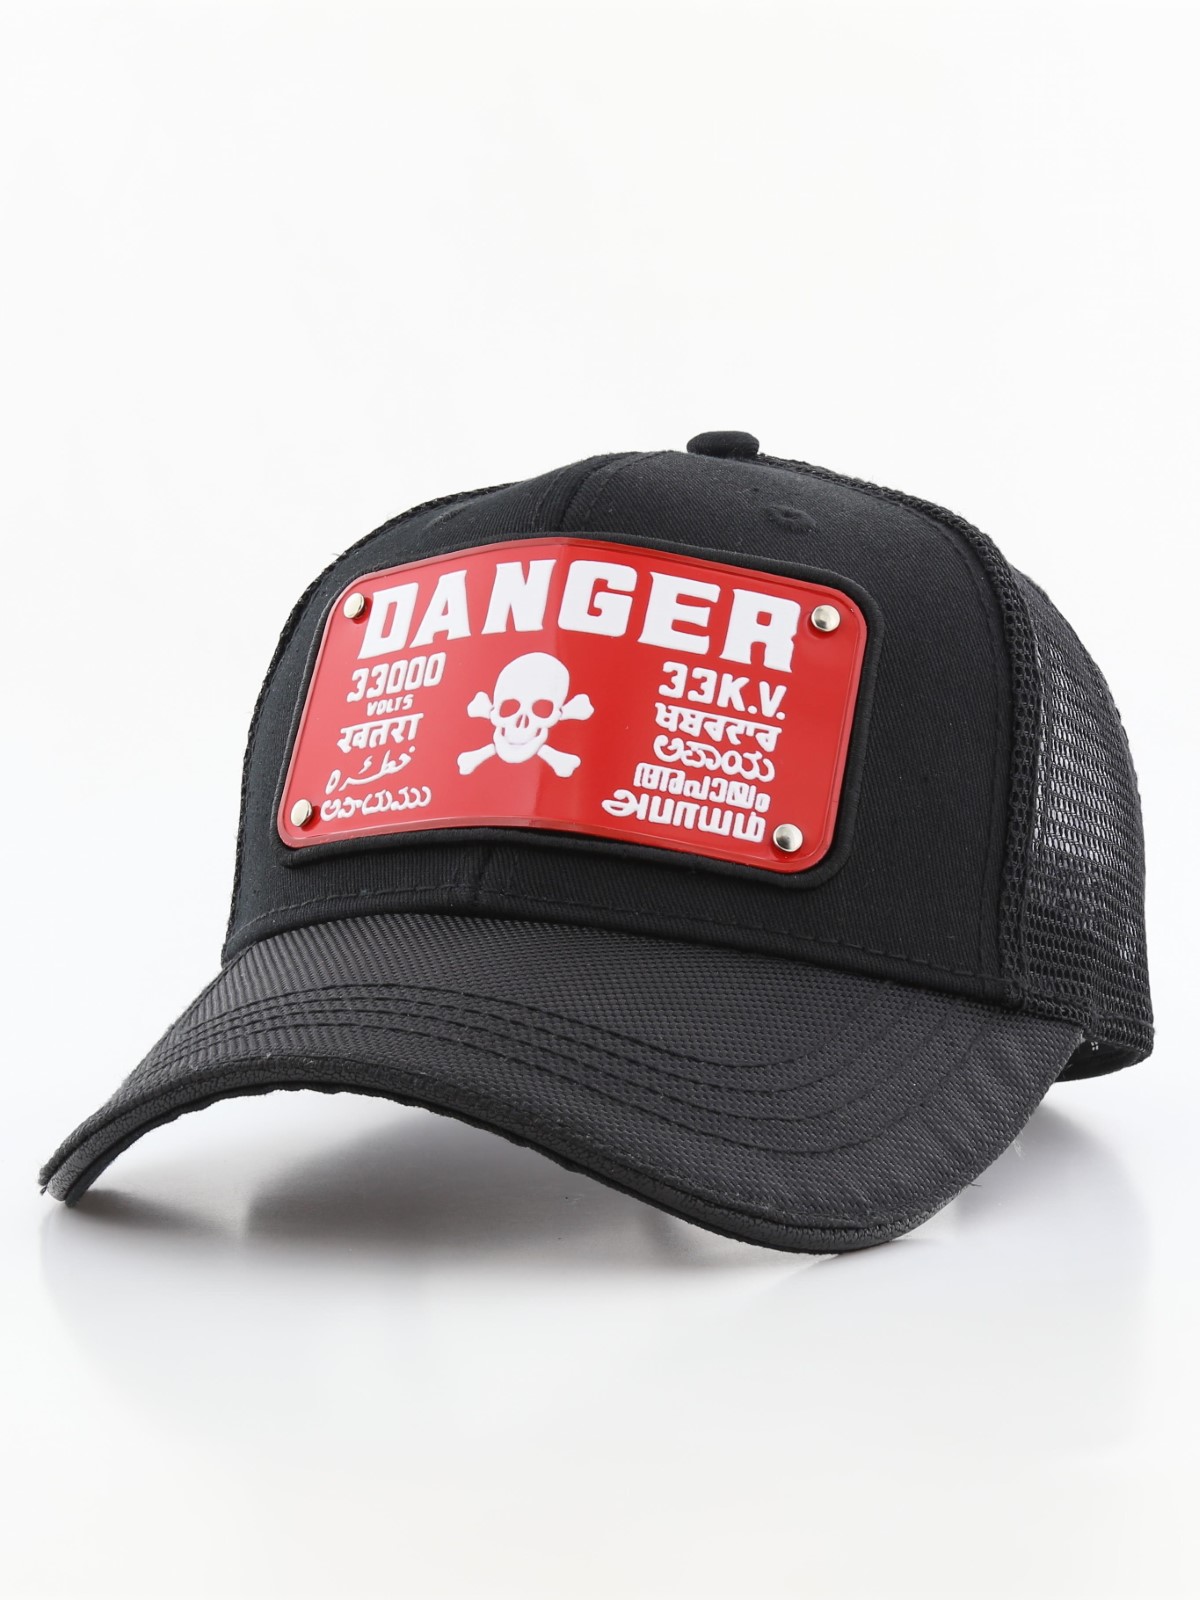 Raqam Electrical Danger Sign Plate No. Danger Model 1 Black Unisex Trucker Cap